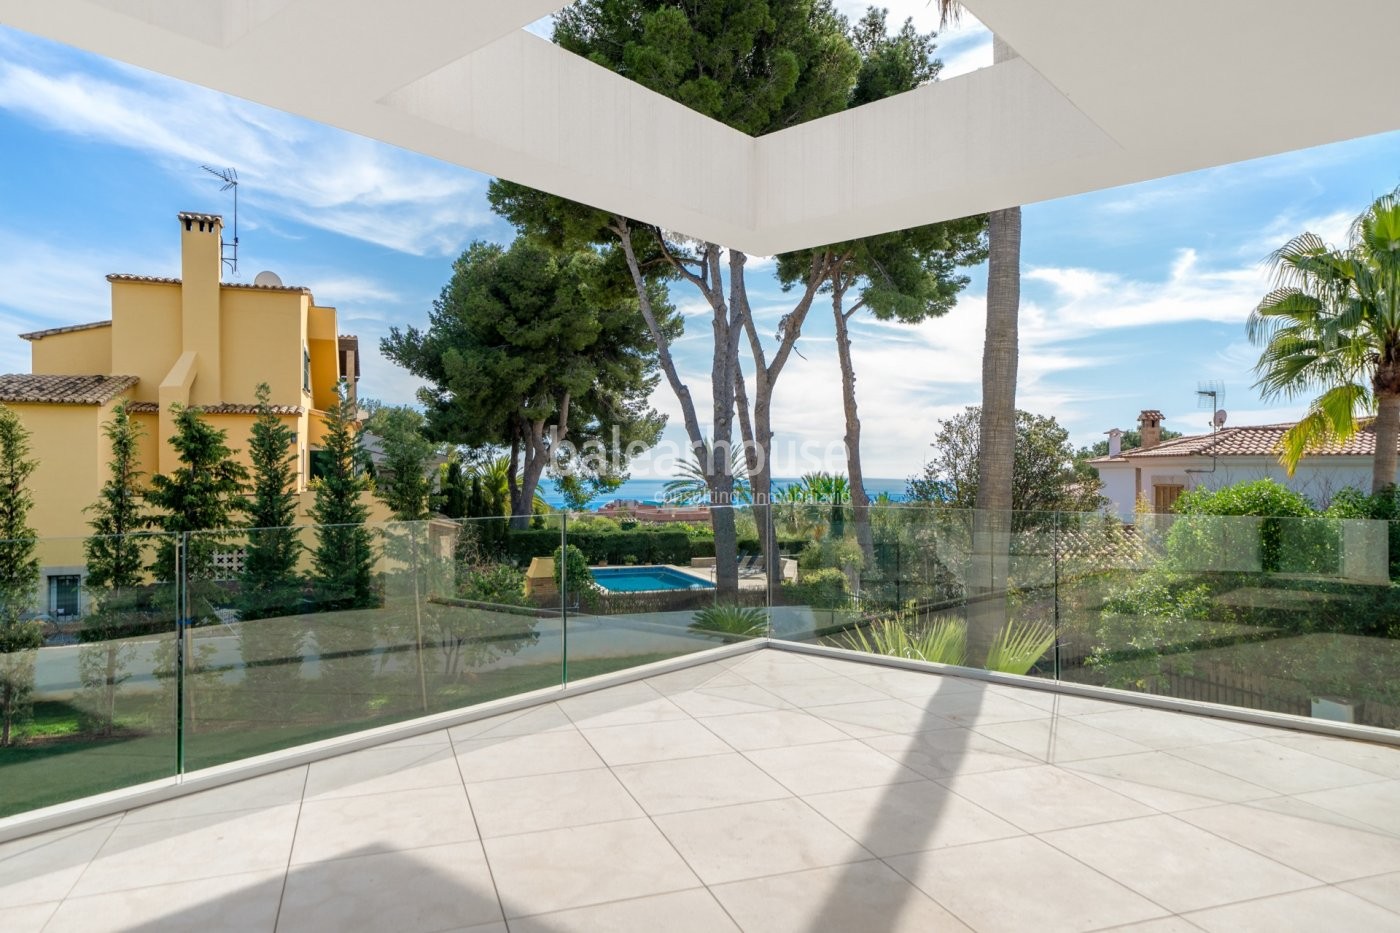 Diseño y espacios llenos de luz en esta villa de obra nueva con vistas hasta el mar en Cas Catalá.